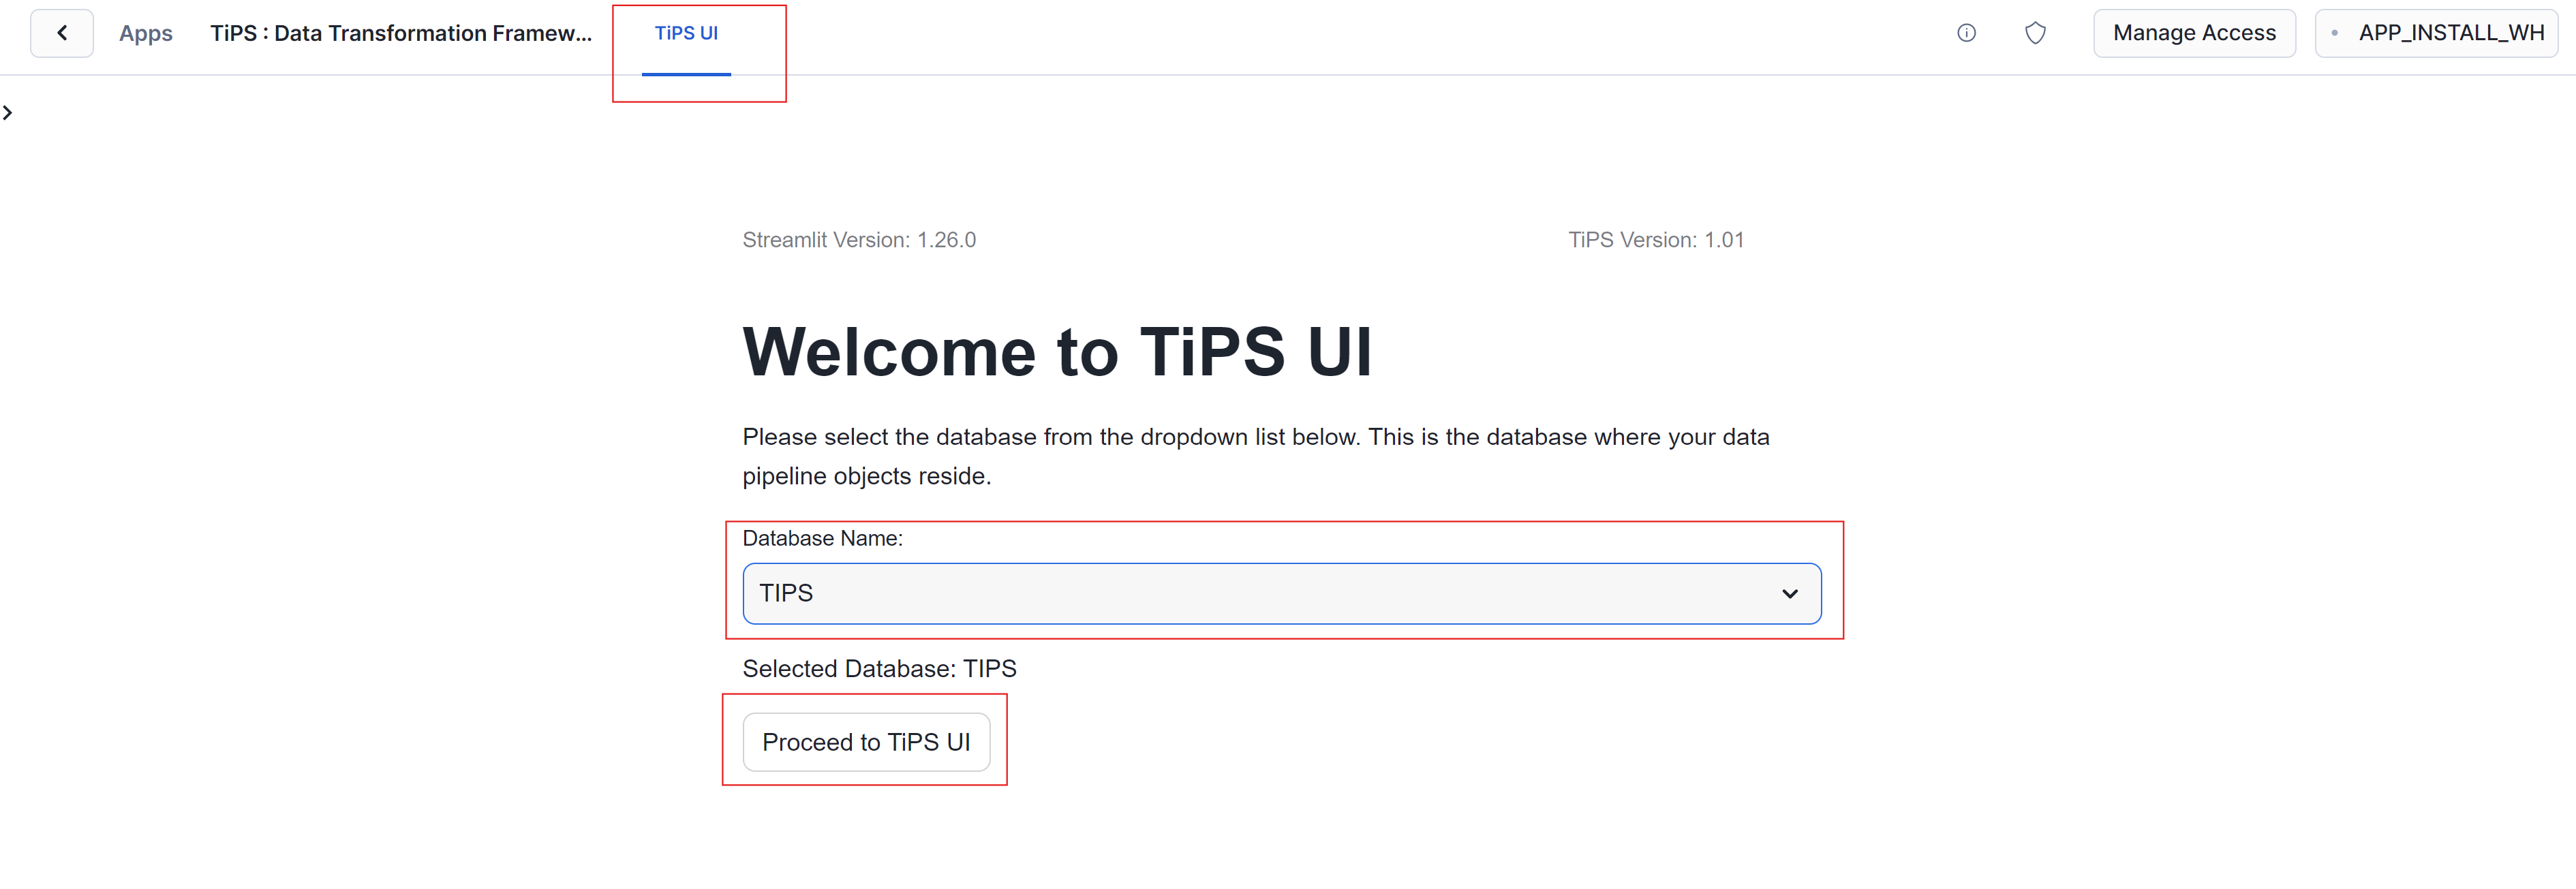 TiPS UI - Select Database